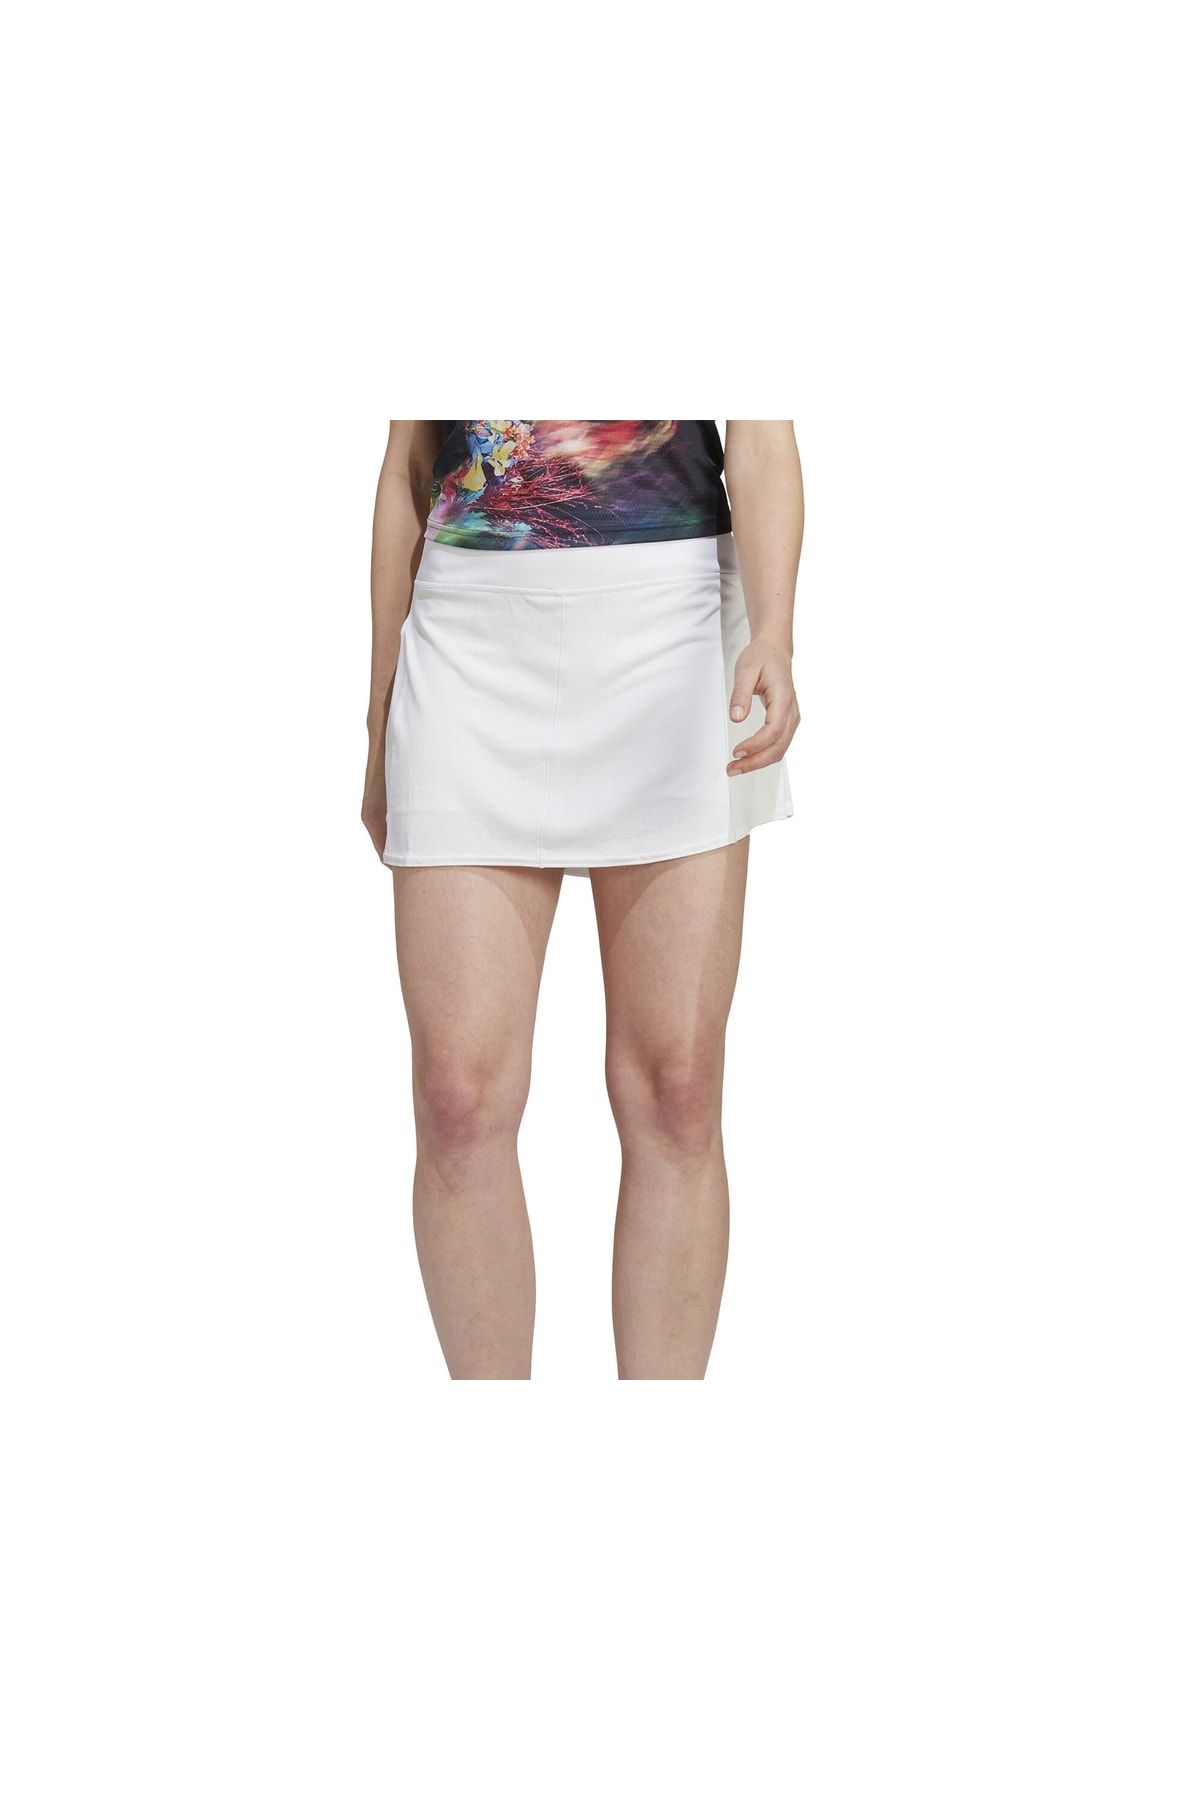 adidas Match Skirt Kadın Tenis Eteği Hs1655 Beyaz